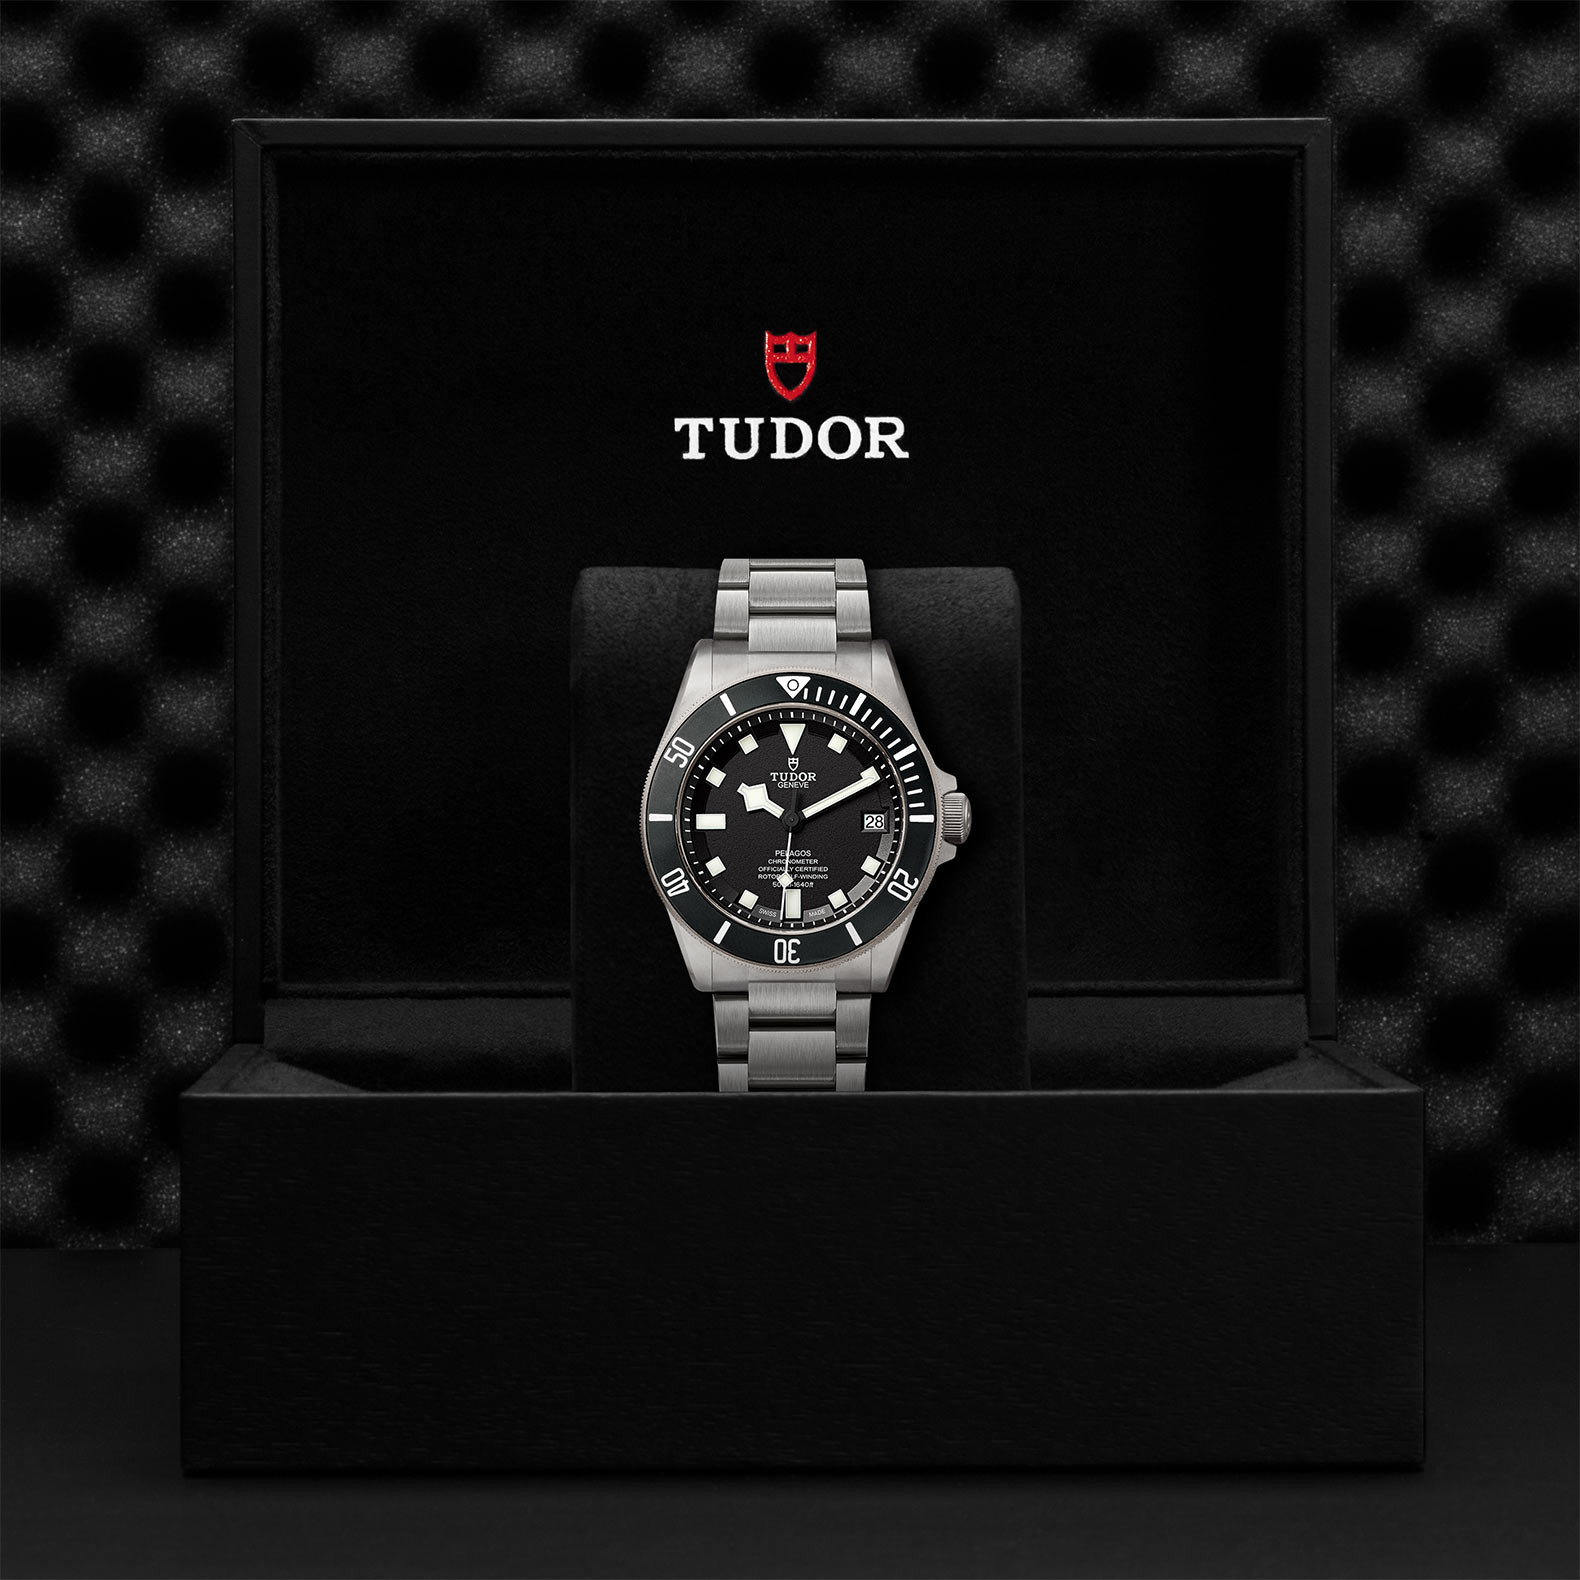 TUDOR Pelagos Watch in Presentation Box